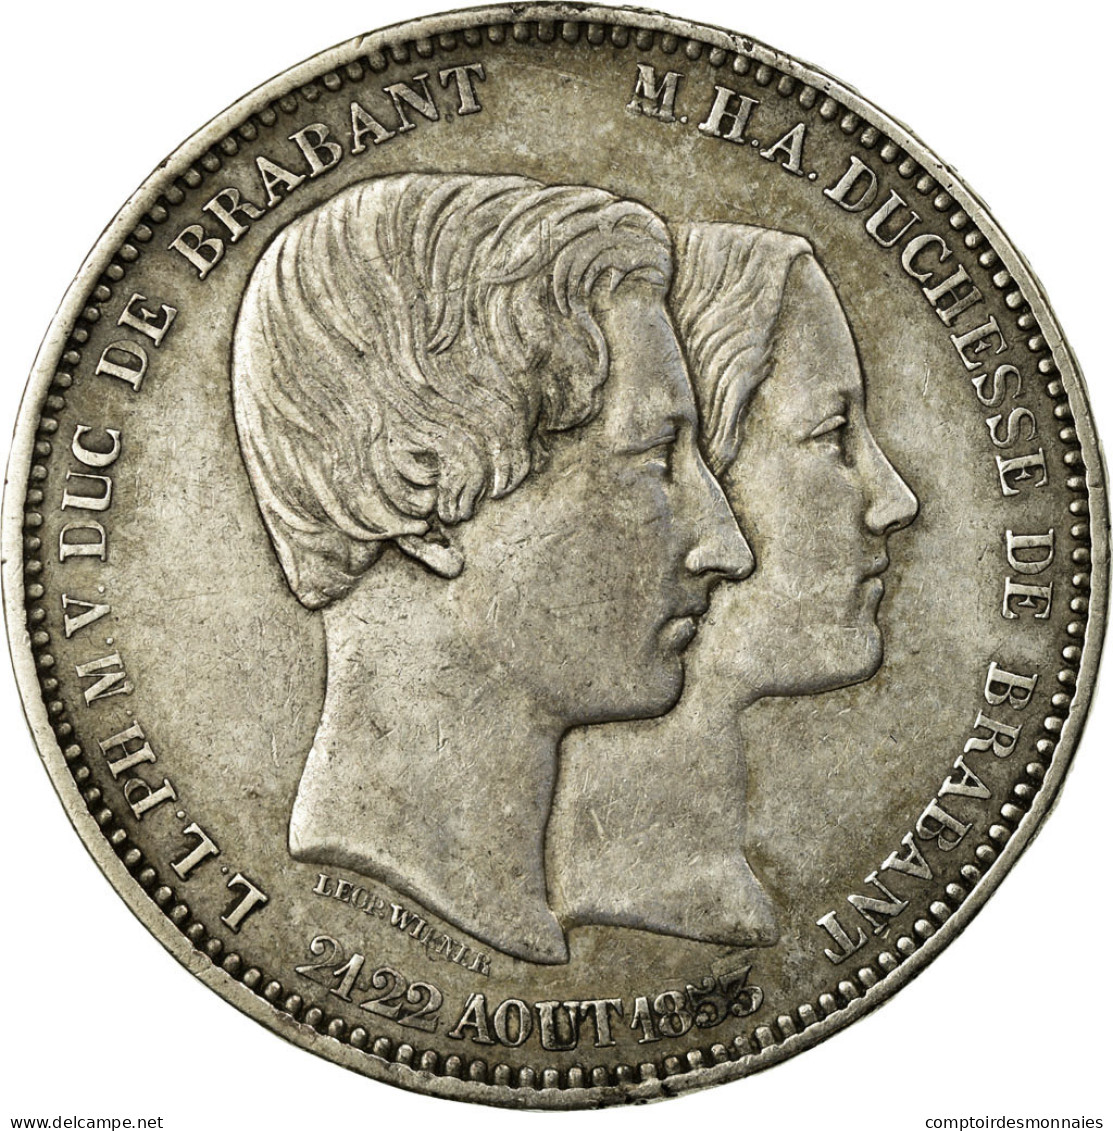 Monnaie, Belgique, Leopold I, 5 Francs, 1853, TTB+, Argent, KM:2.1 - 5 Francs